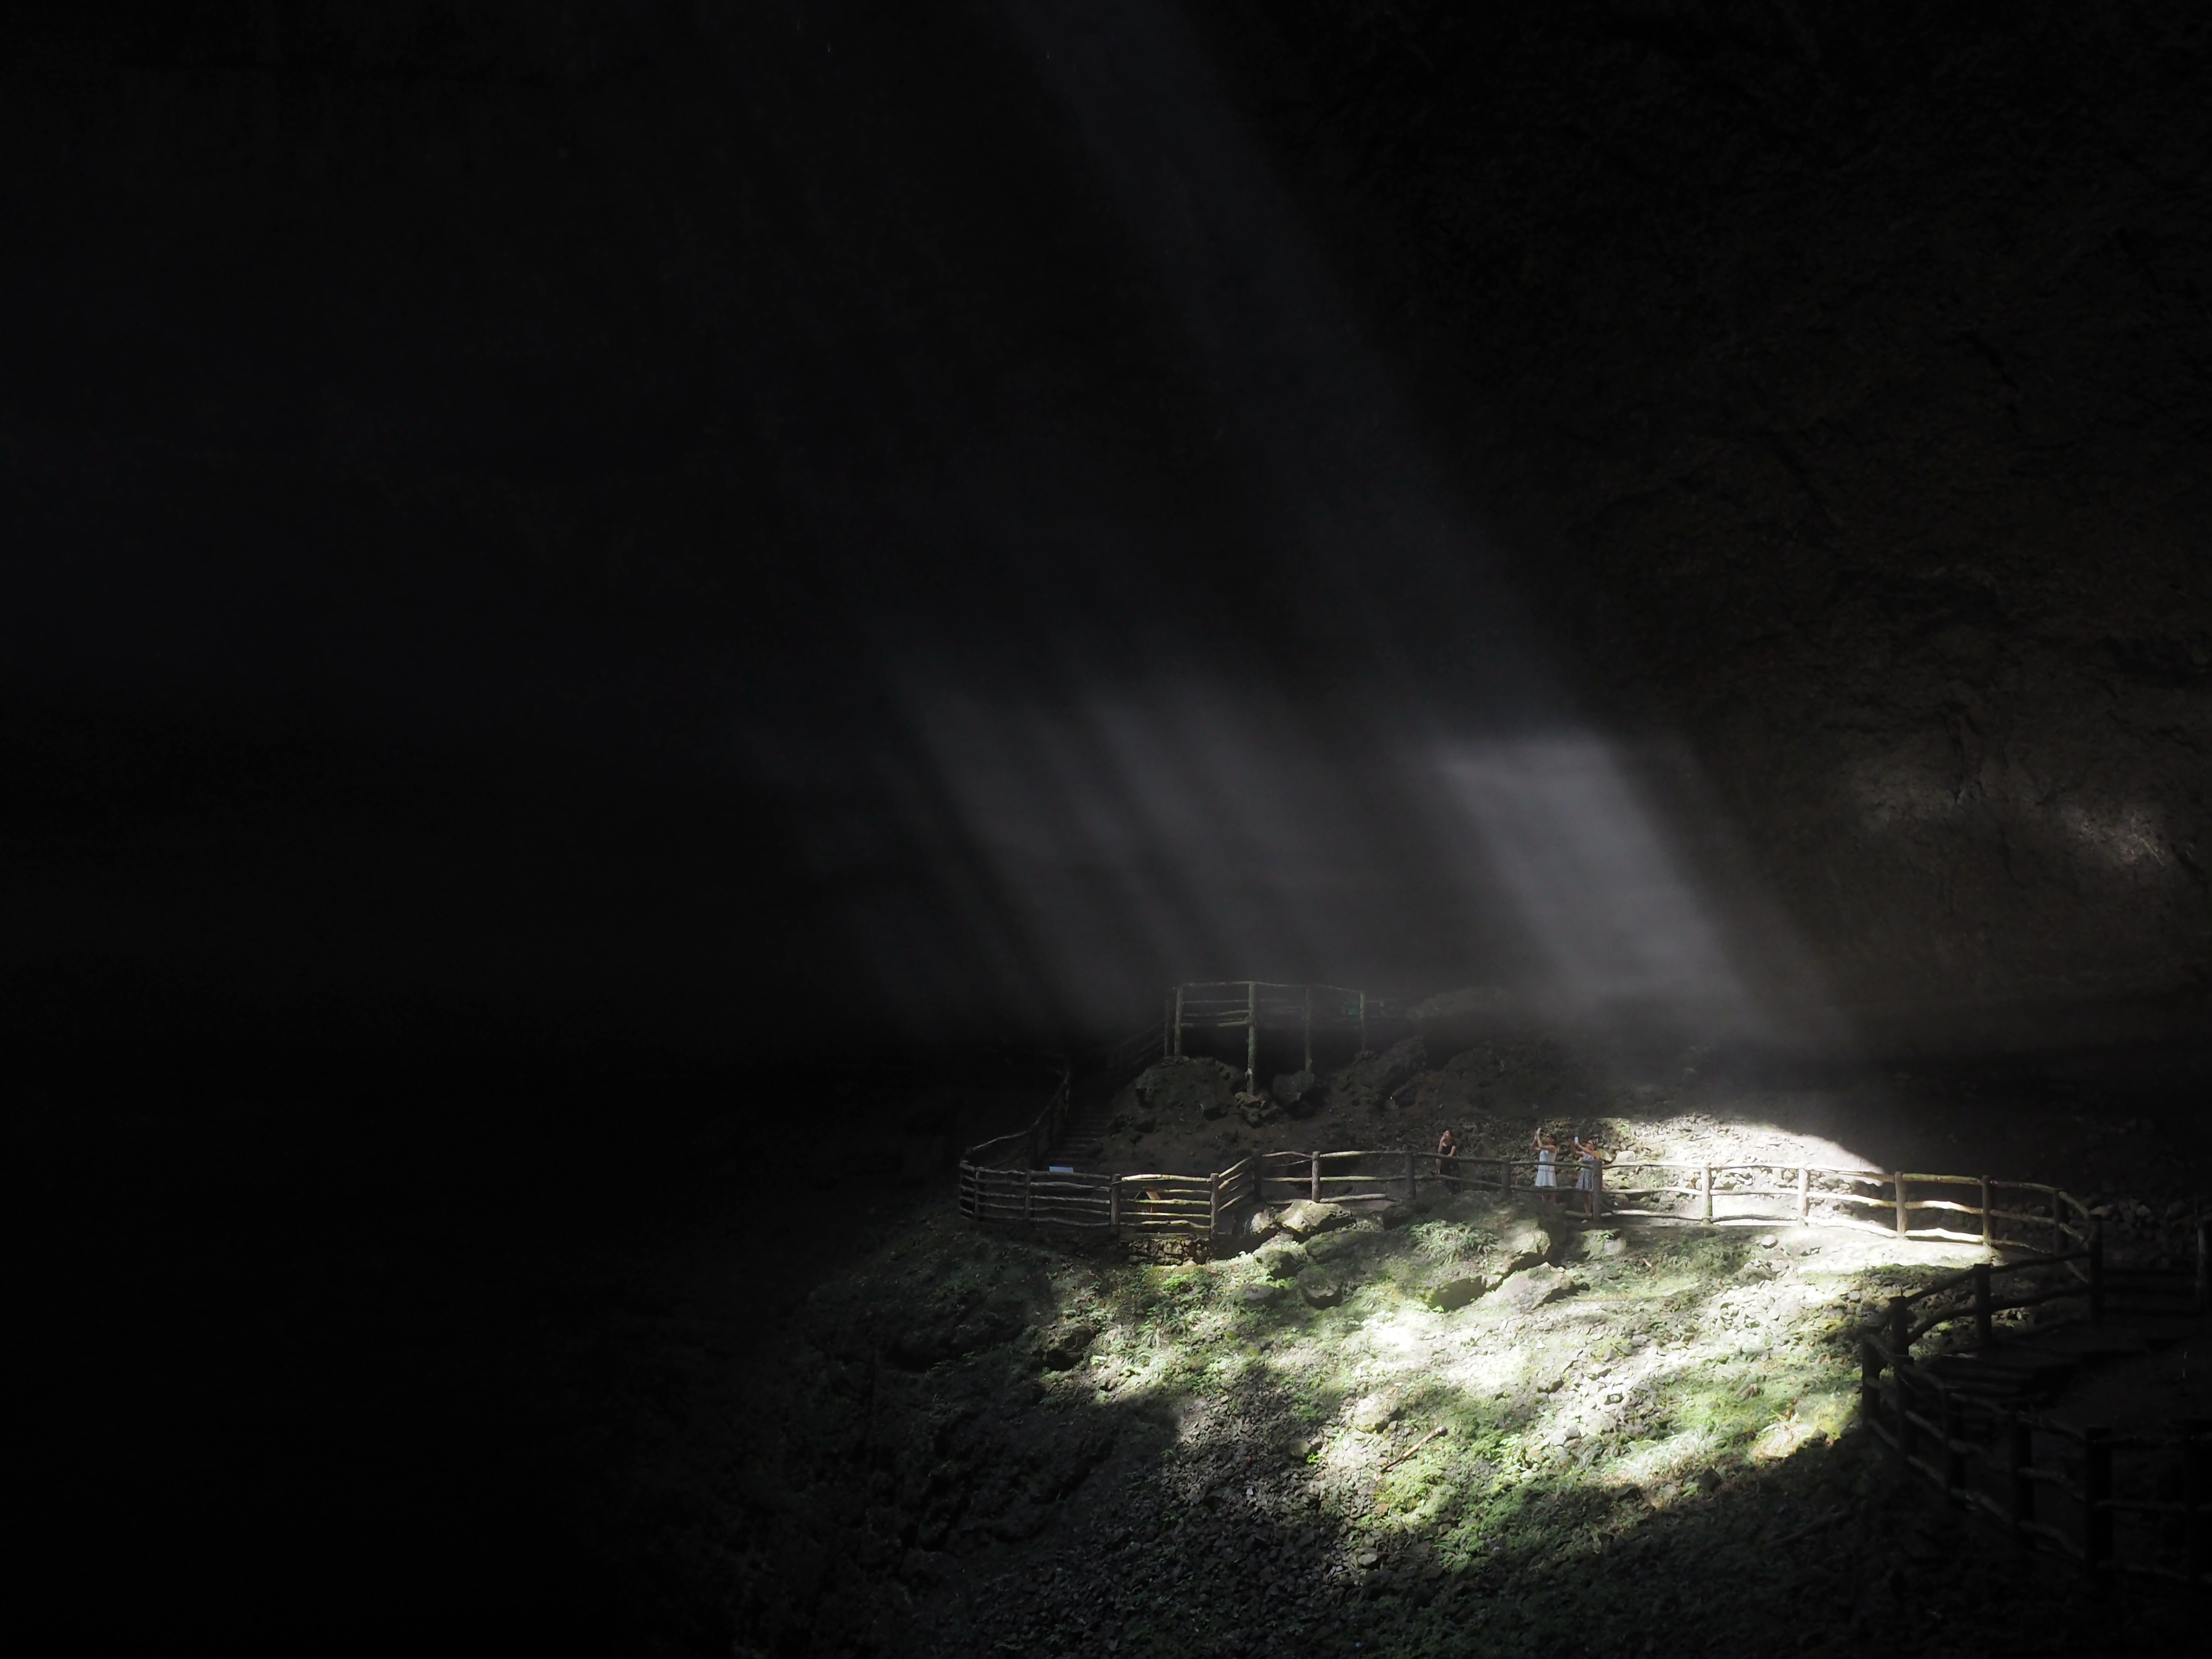 坑的顶部有个洞口,强烈的阳光伴着洞口滴下的水丝,散为水雾,神秘而